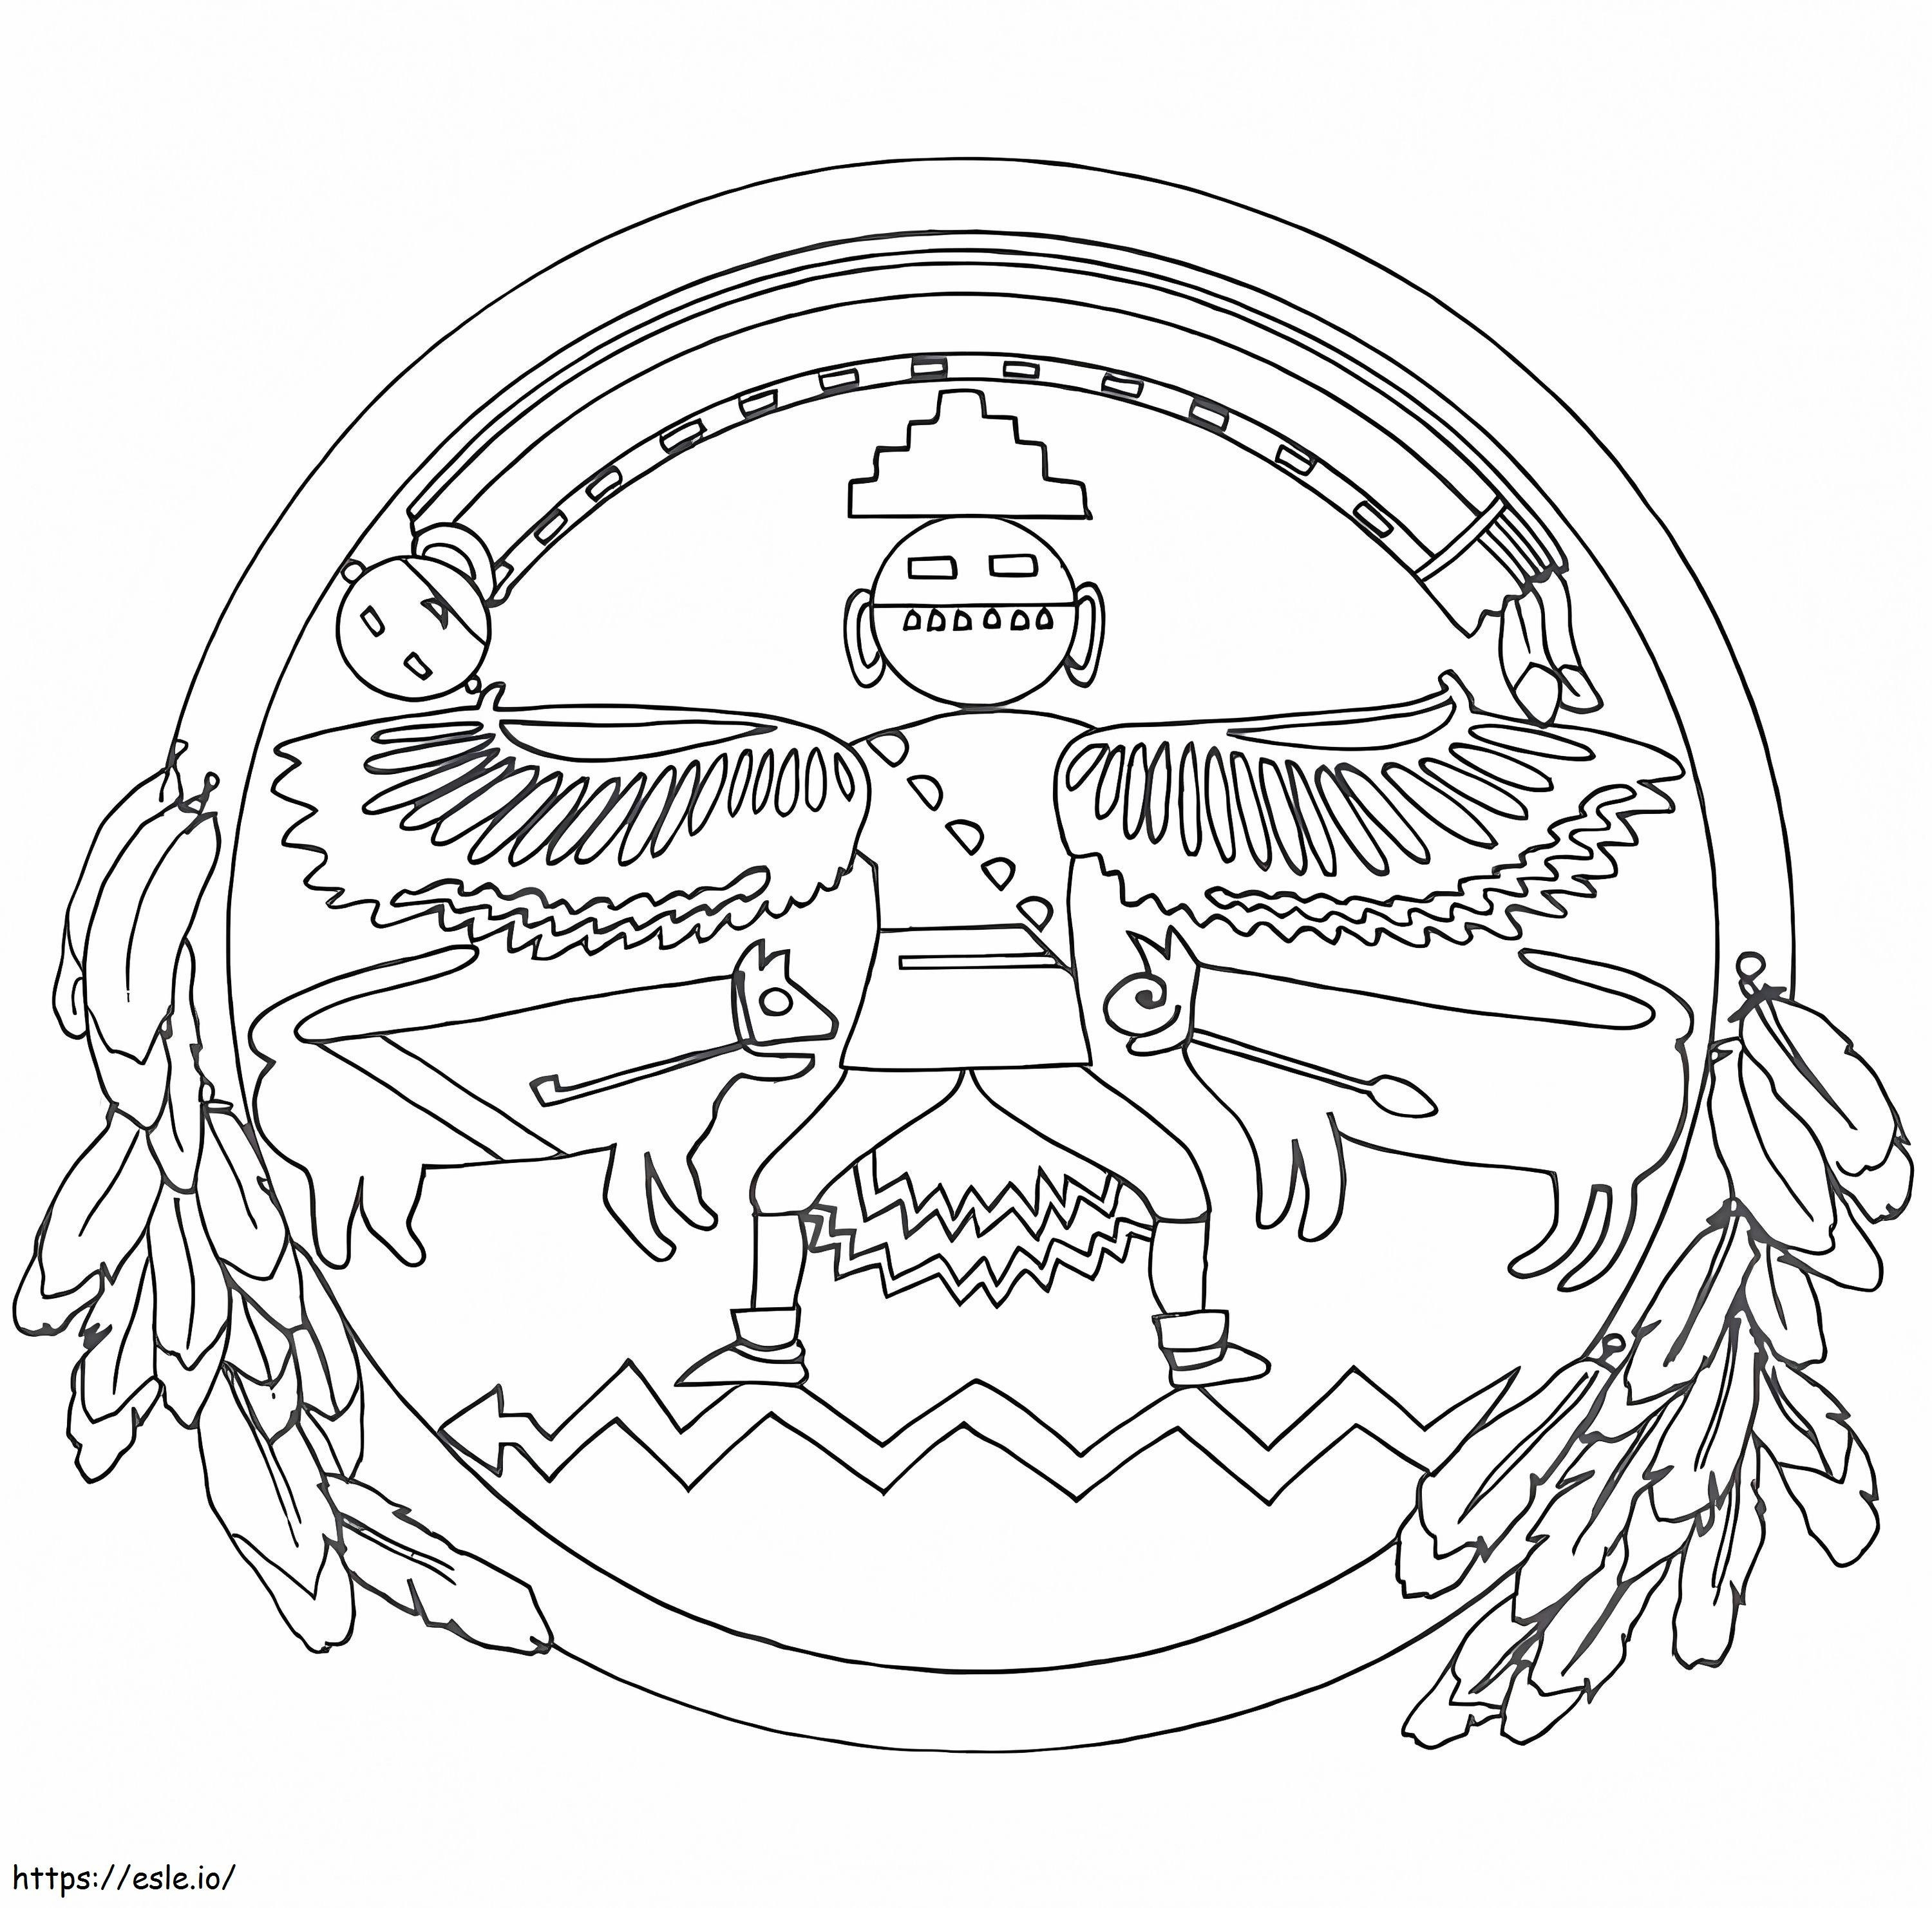 native american mandala coloring page